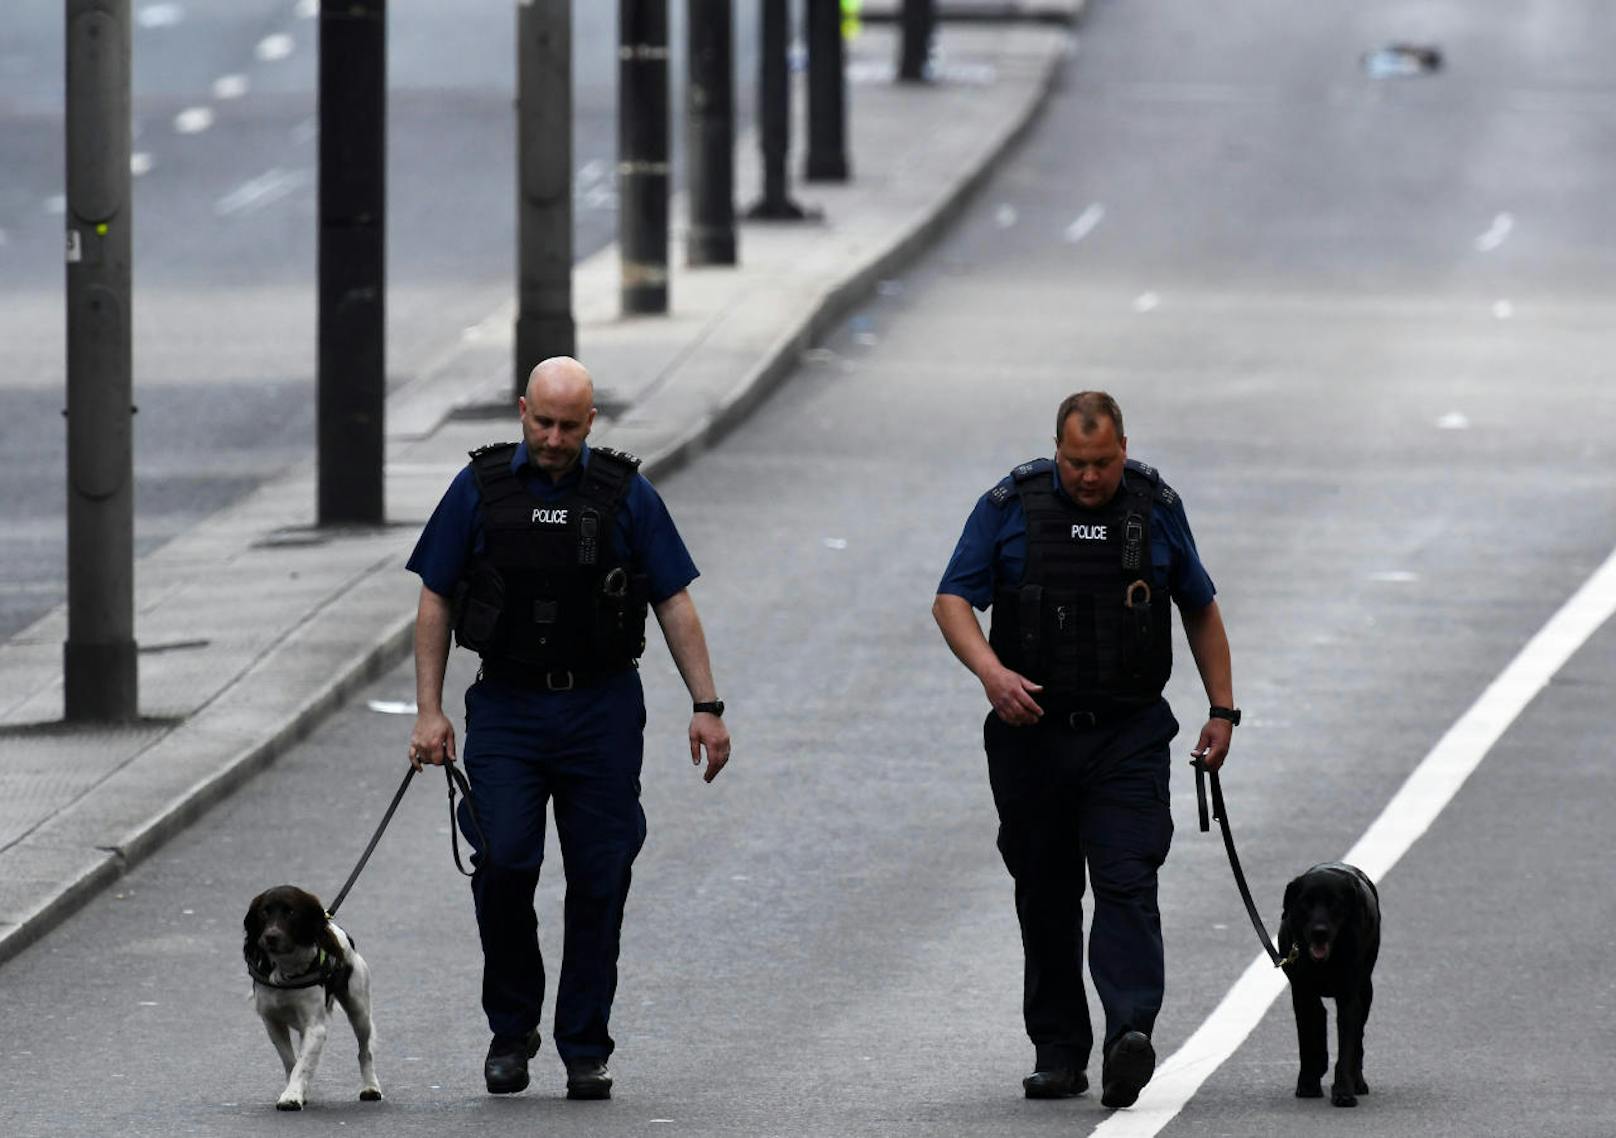 Am Tag nach dem Anschlag: Bewaffnete Polizisten patrouillieren in der Londoner Innenstadt. Der Anschlagsort ist noch abgesperrt, Forensiker ermitteln.